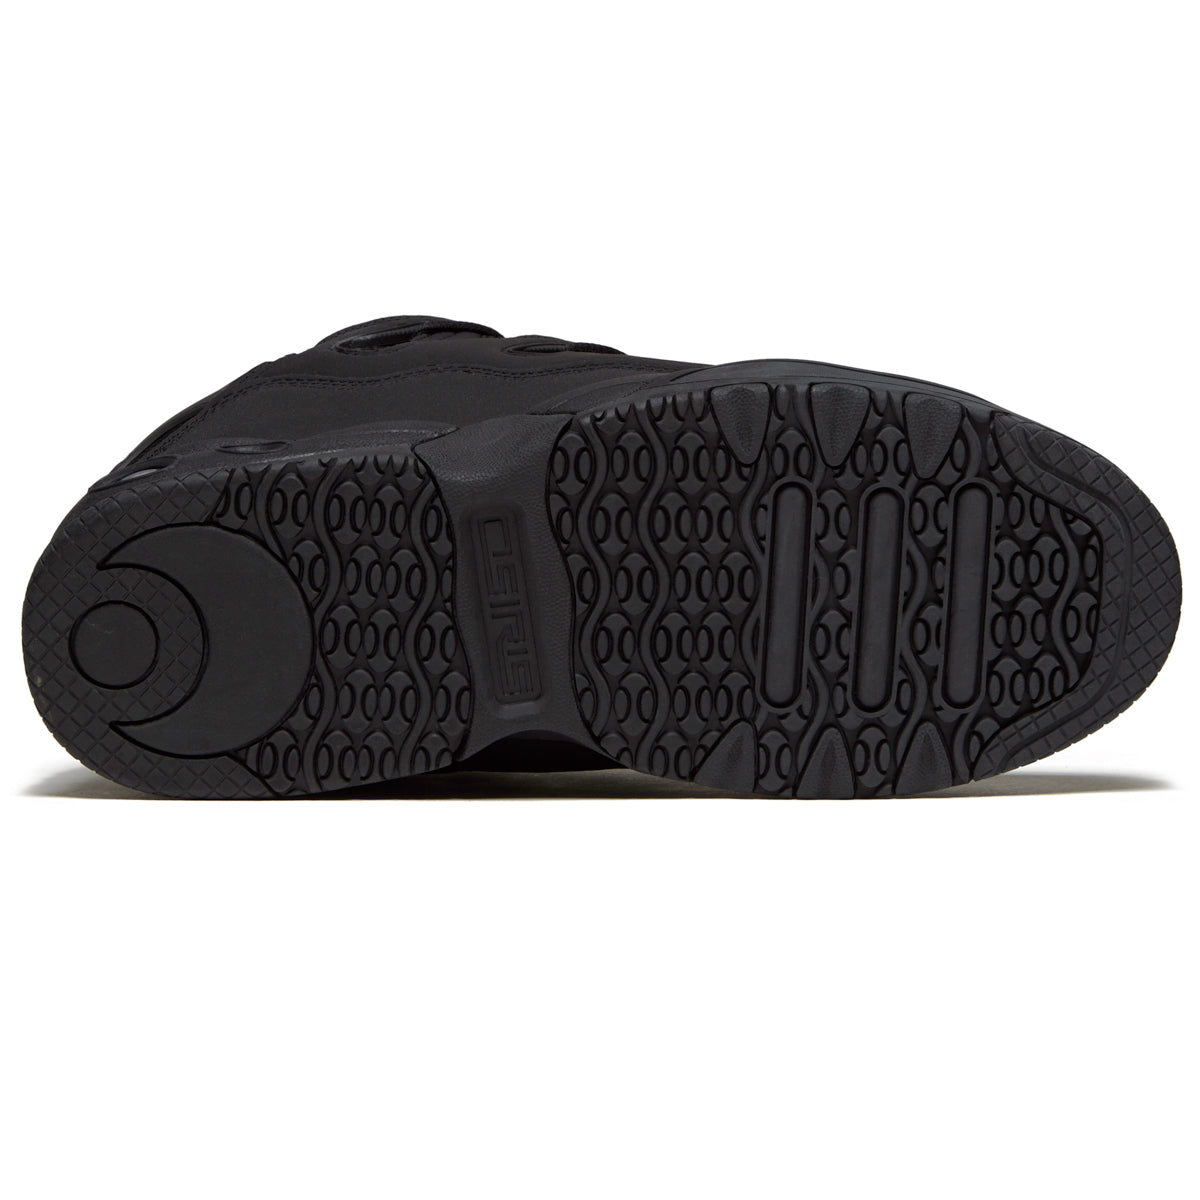 Osiris D3 Og Shoes - Black/Black/Black image 4